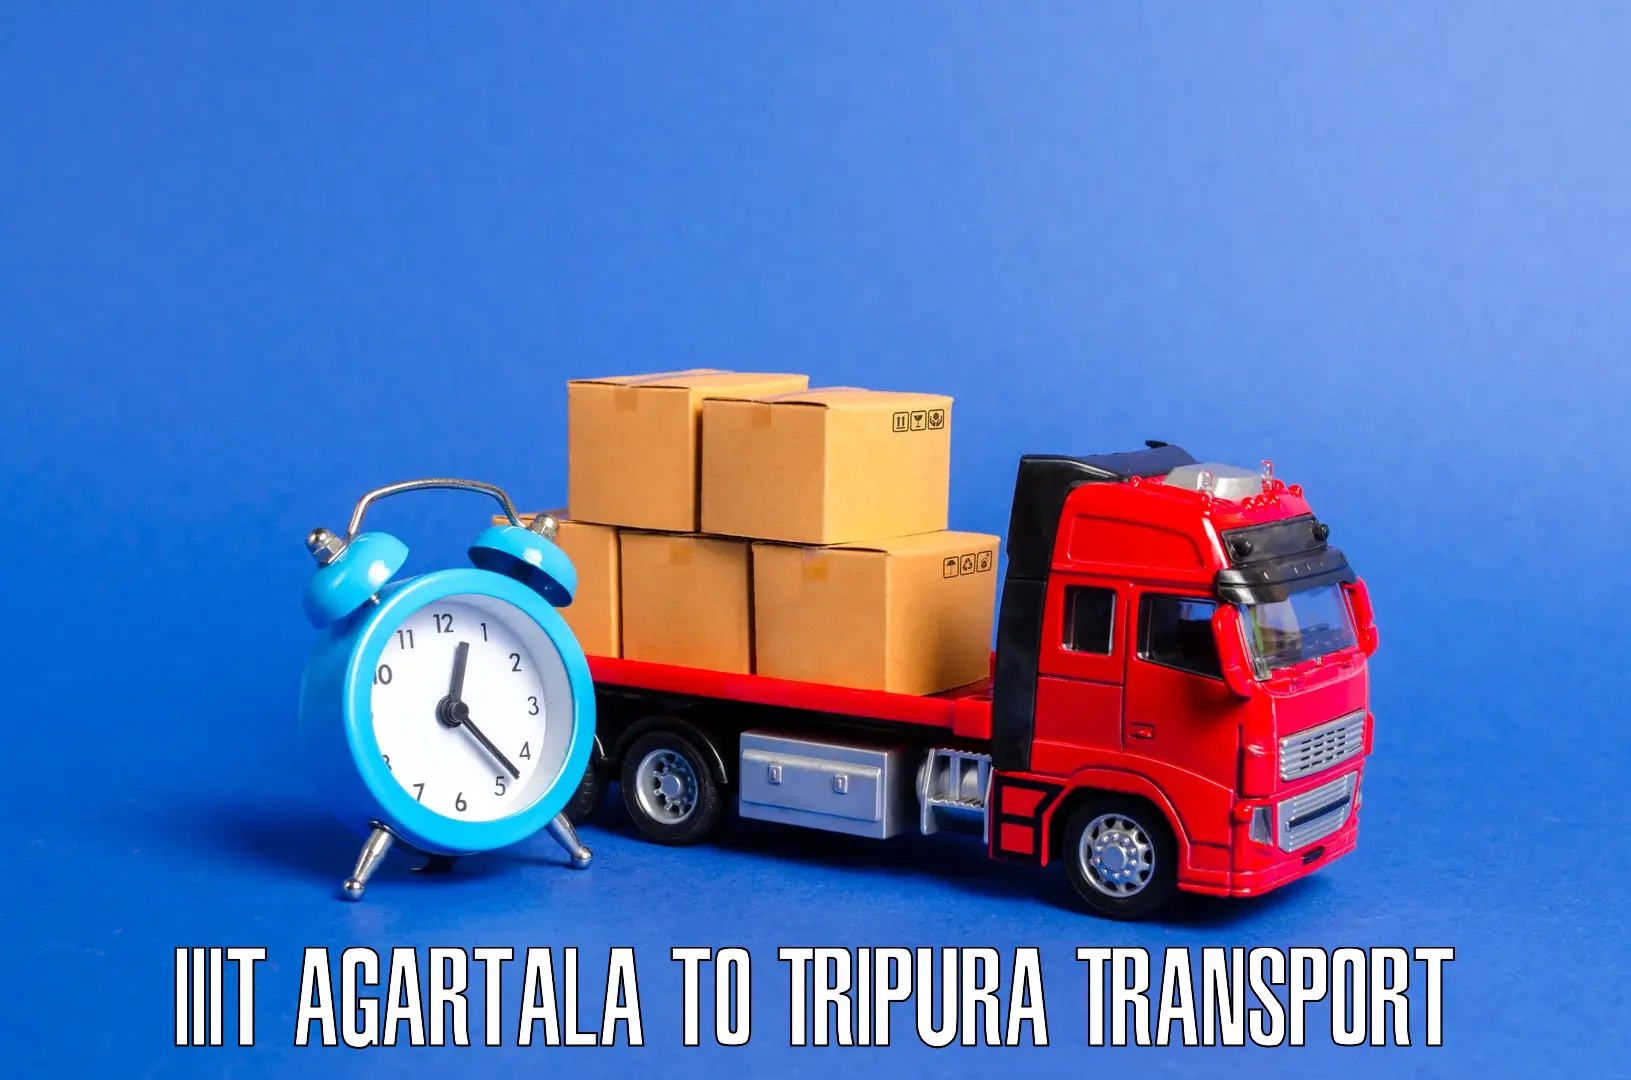 Furniture transport service IIIT Agartala to Agartala